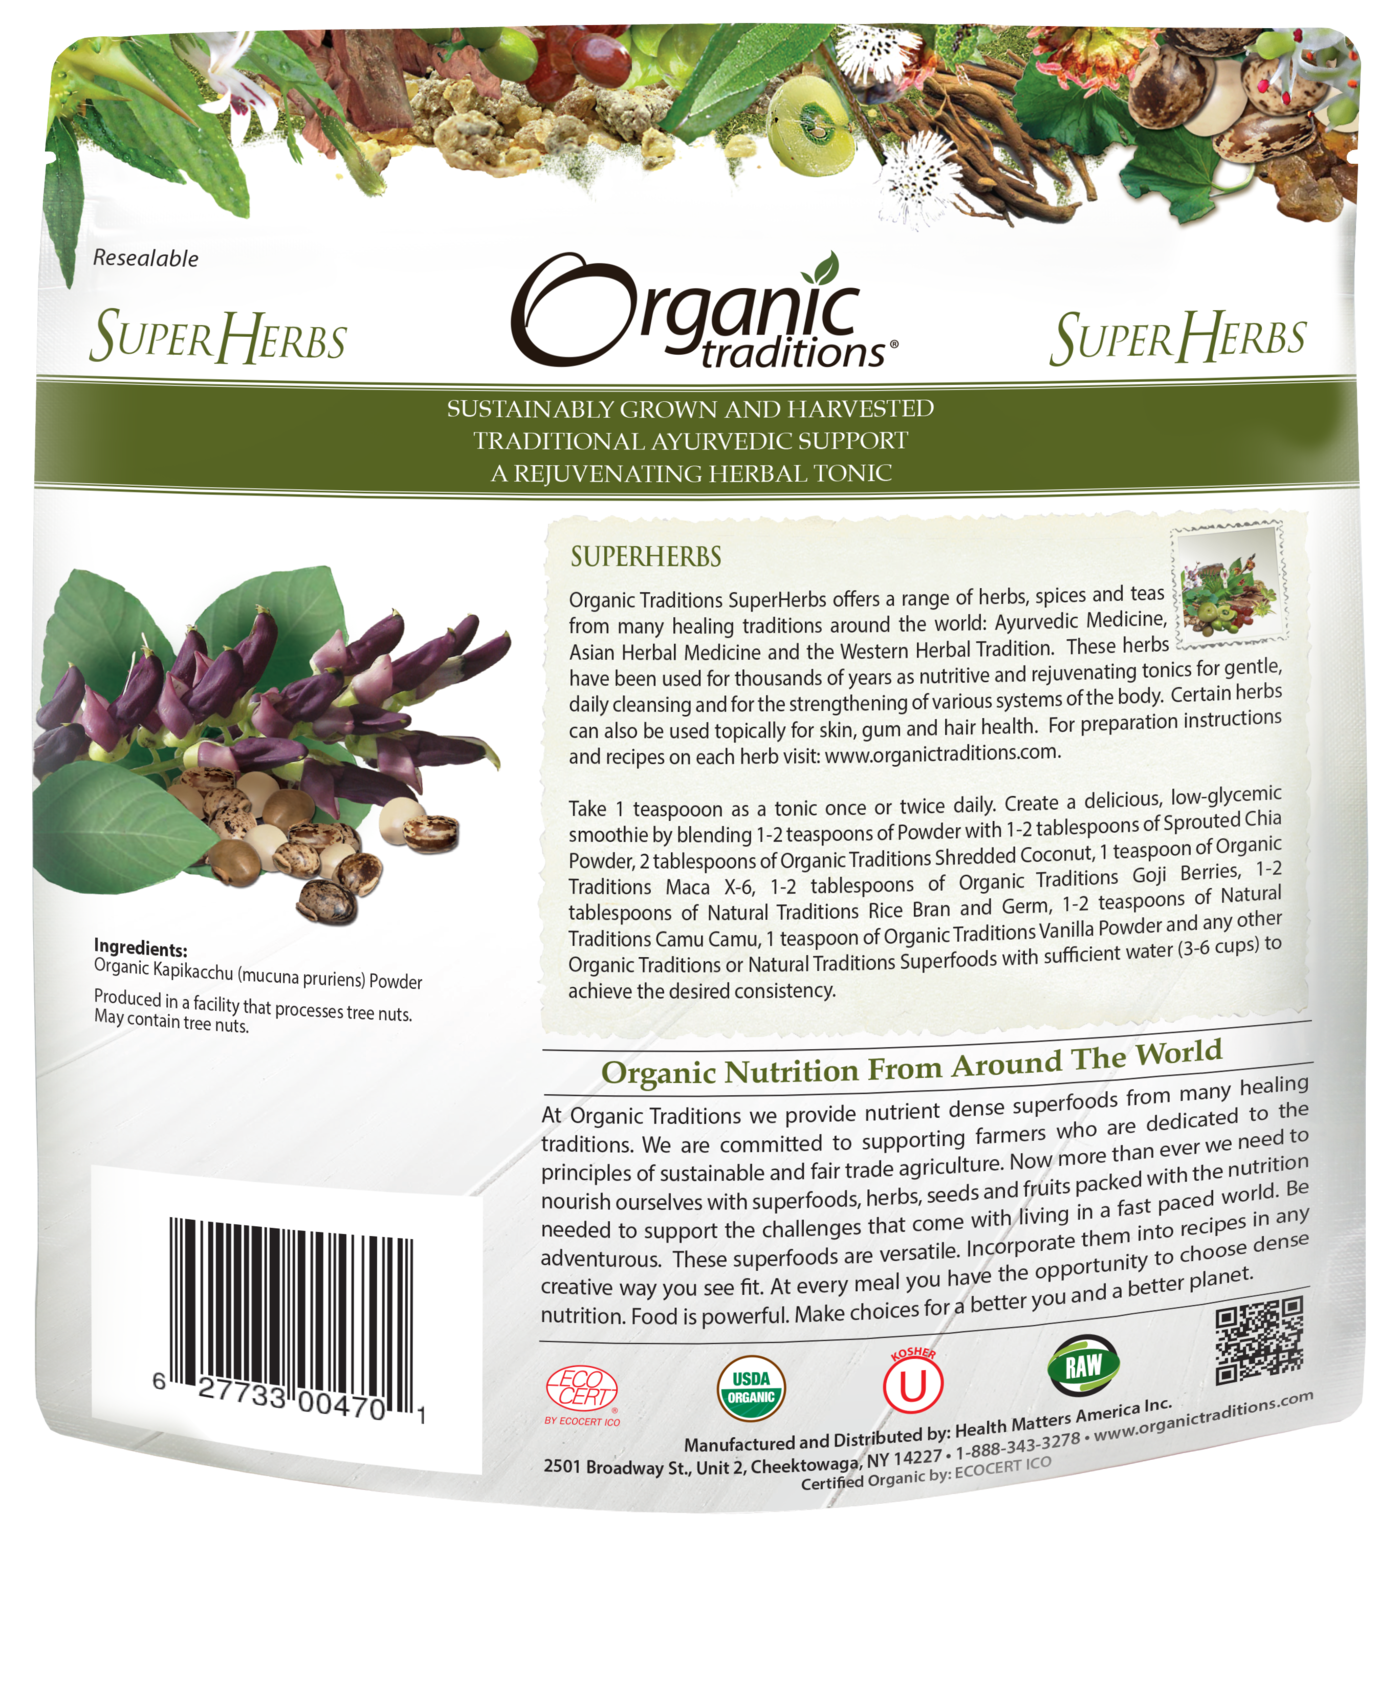 Organic Traditions Mucuna Kapikacchu Powder (200g) - Lifestyle Markets